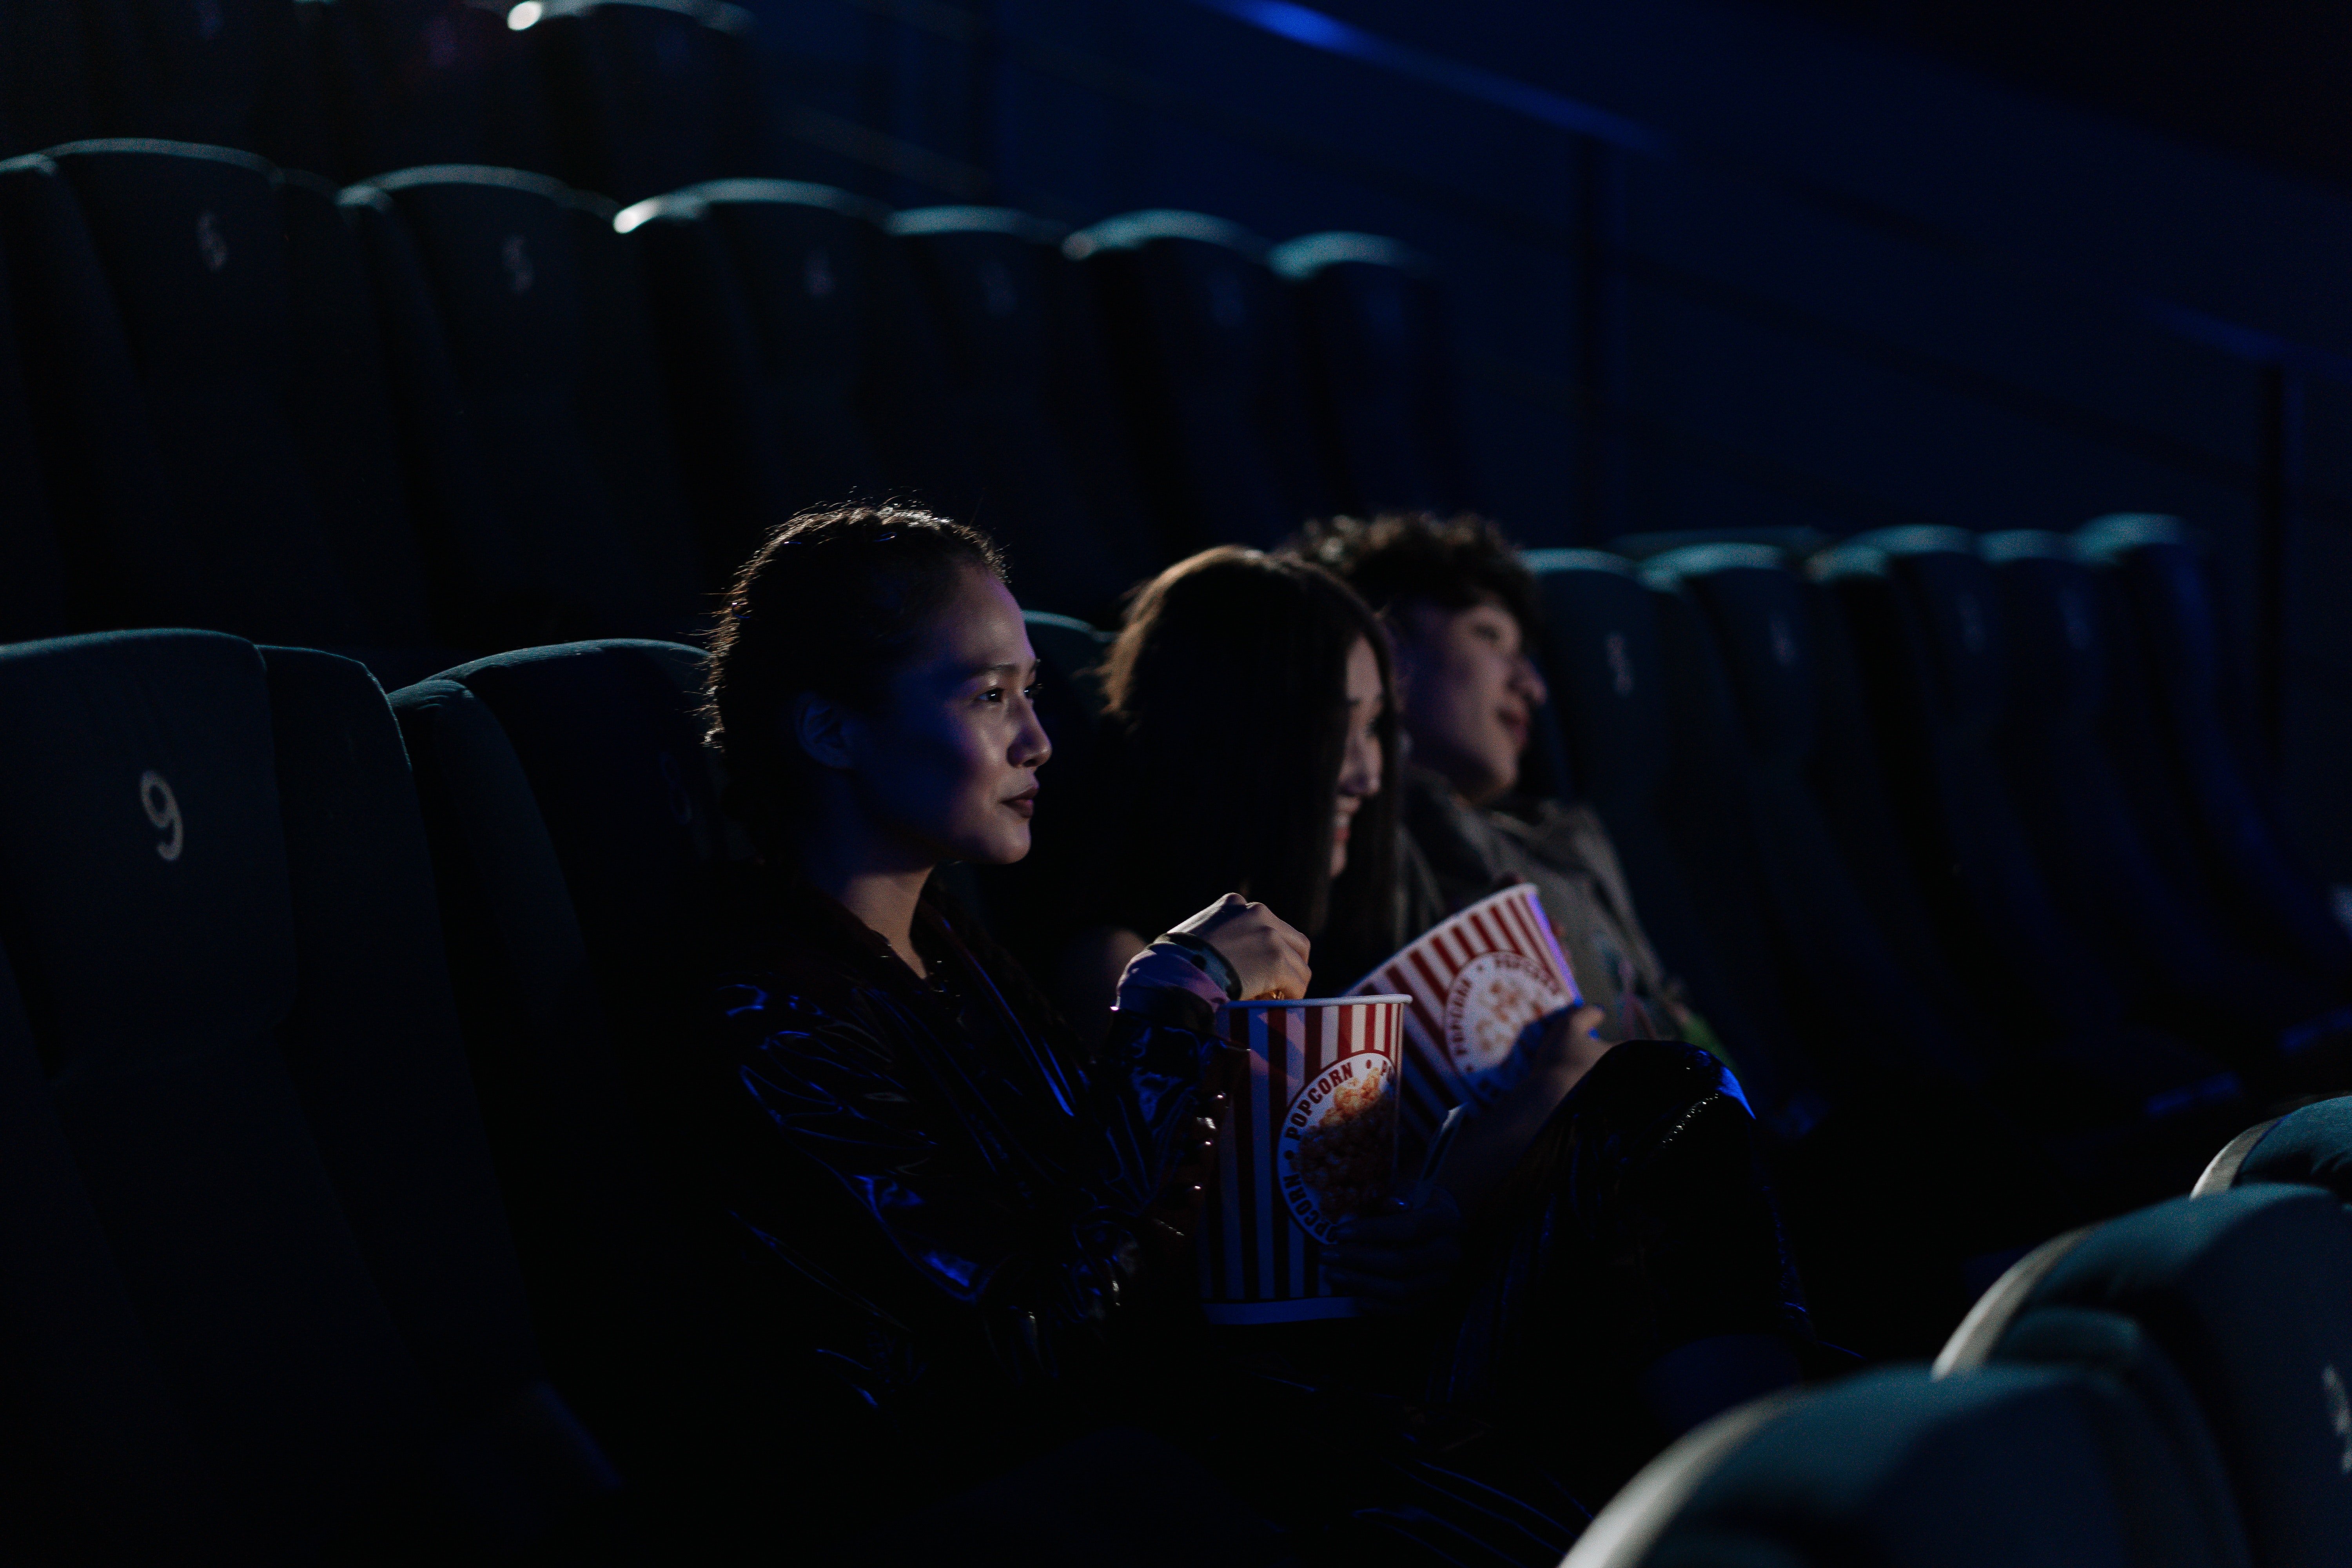 Torna la Fiesta del Cine 2022 aquest octubre amb entrades a 3,50 euros